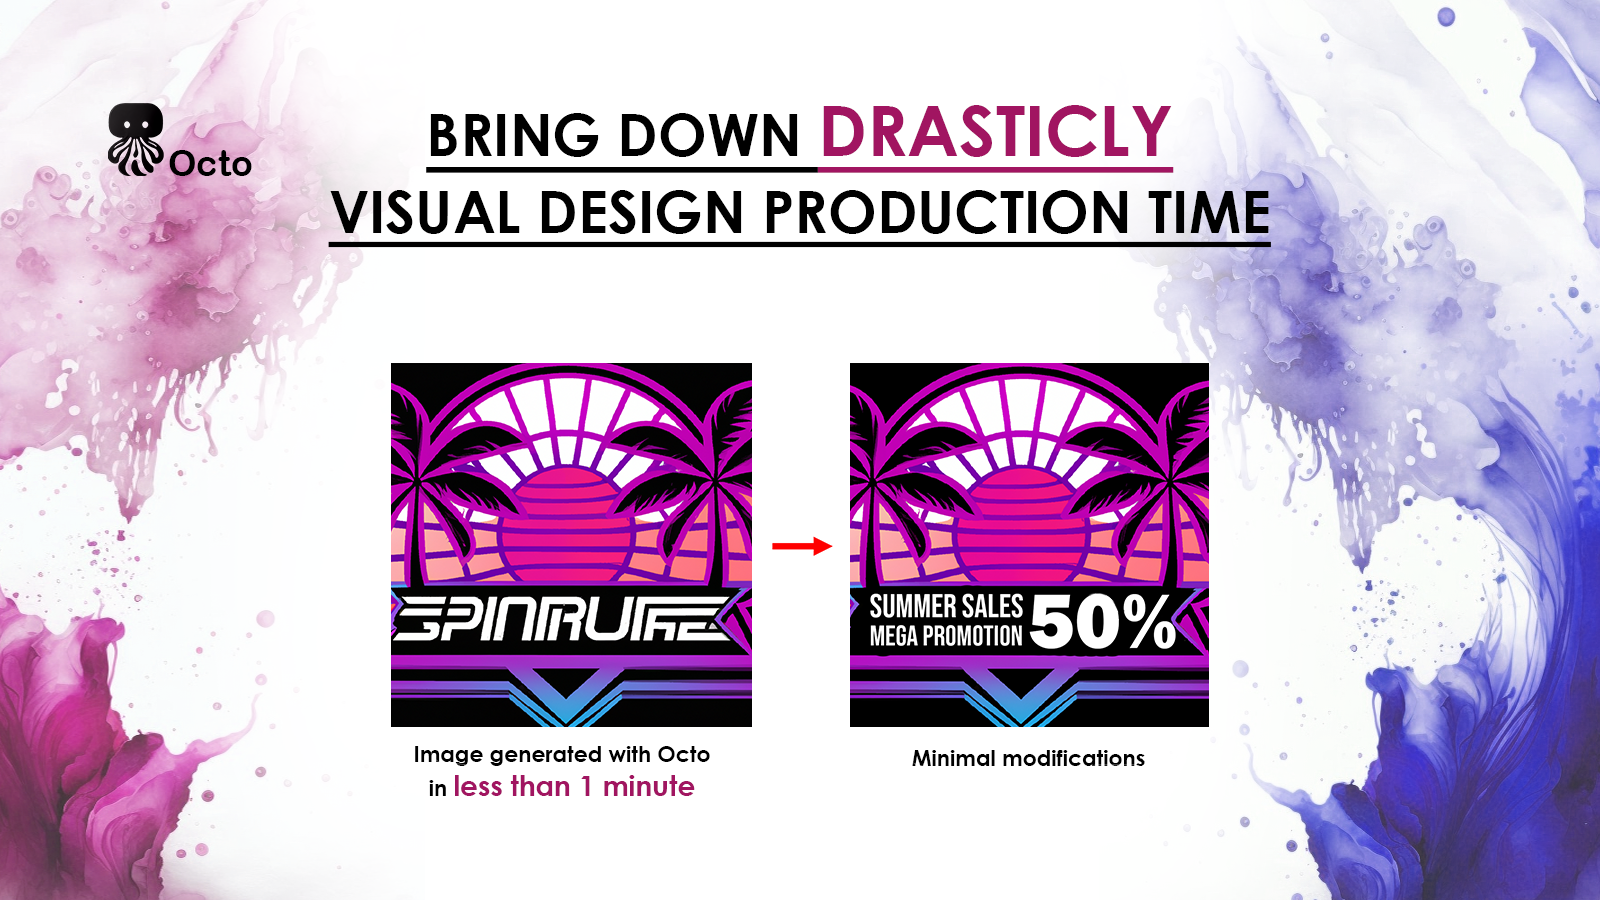 Minska produktionstiden för visuell design ( <1min / generation )